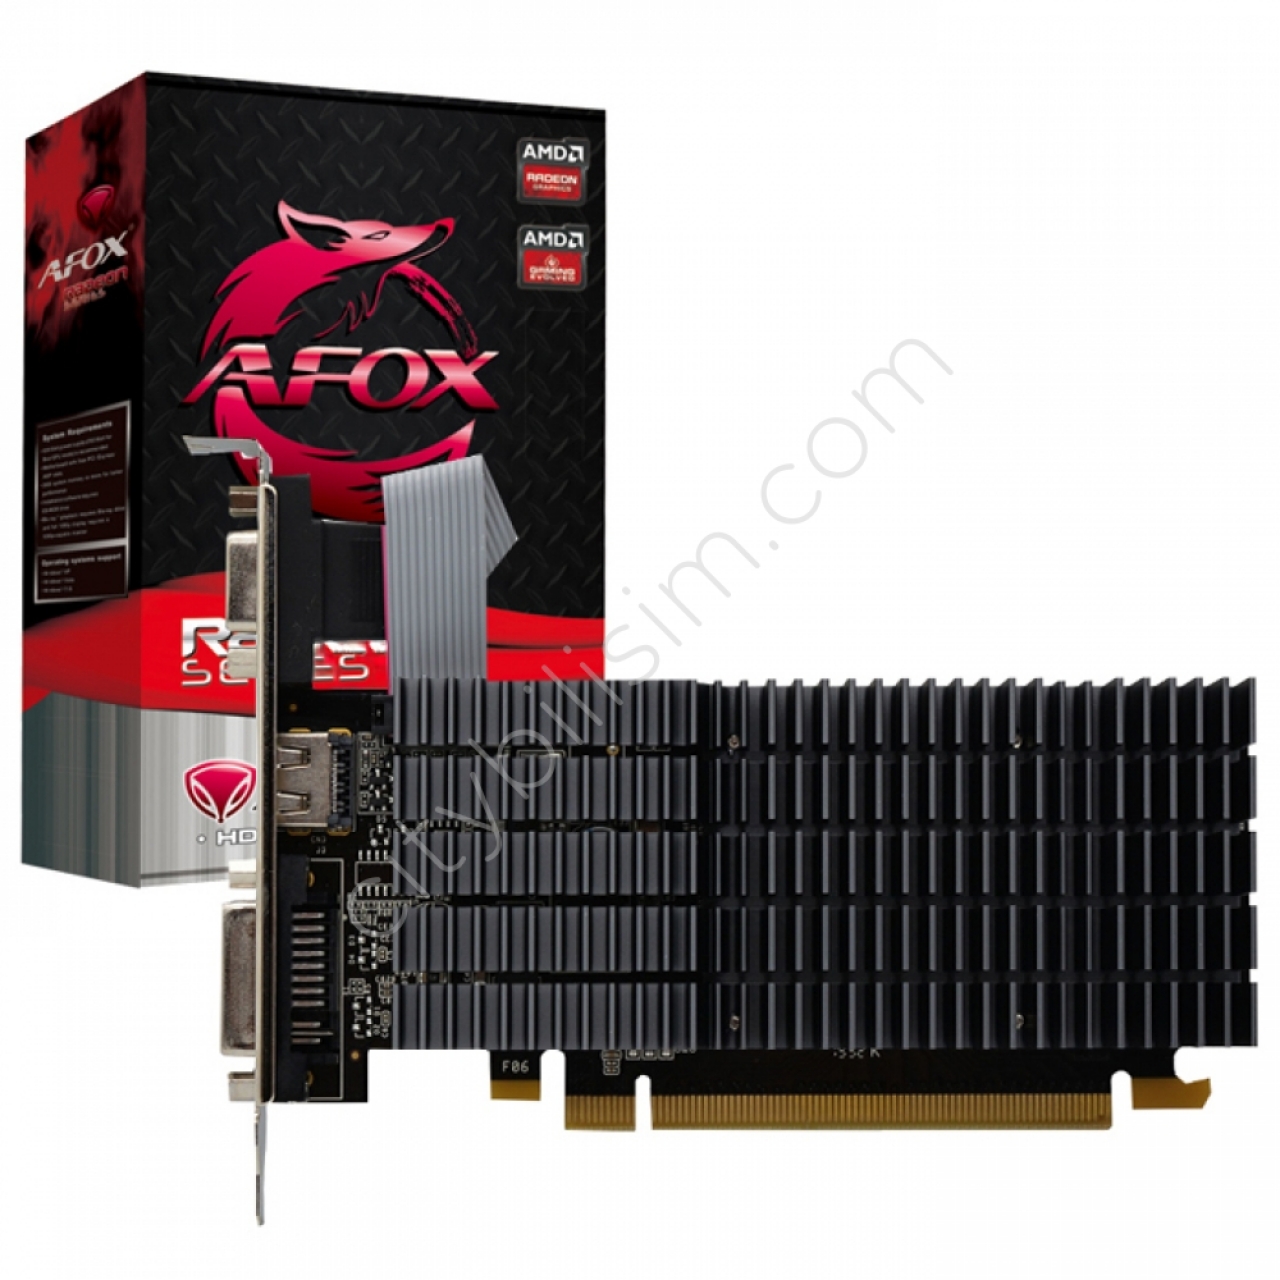 AFOX R5 230 2GB DDR3 64 Bit AFR5230-2048D3L9-V2 (LP)